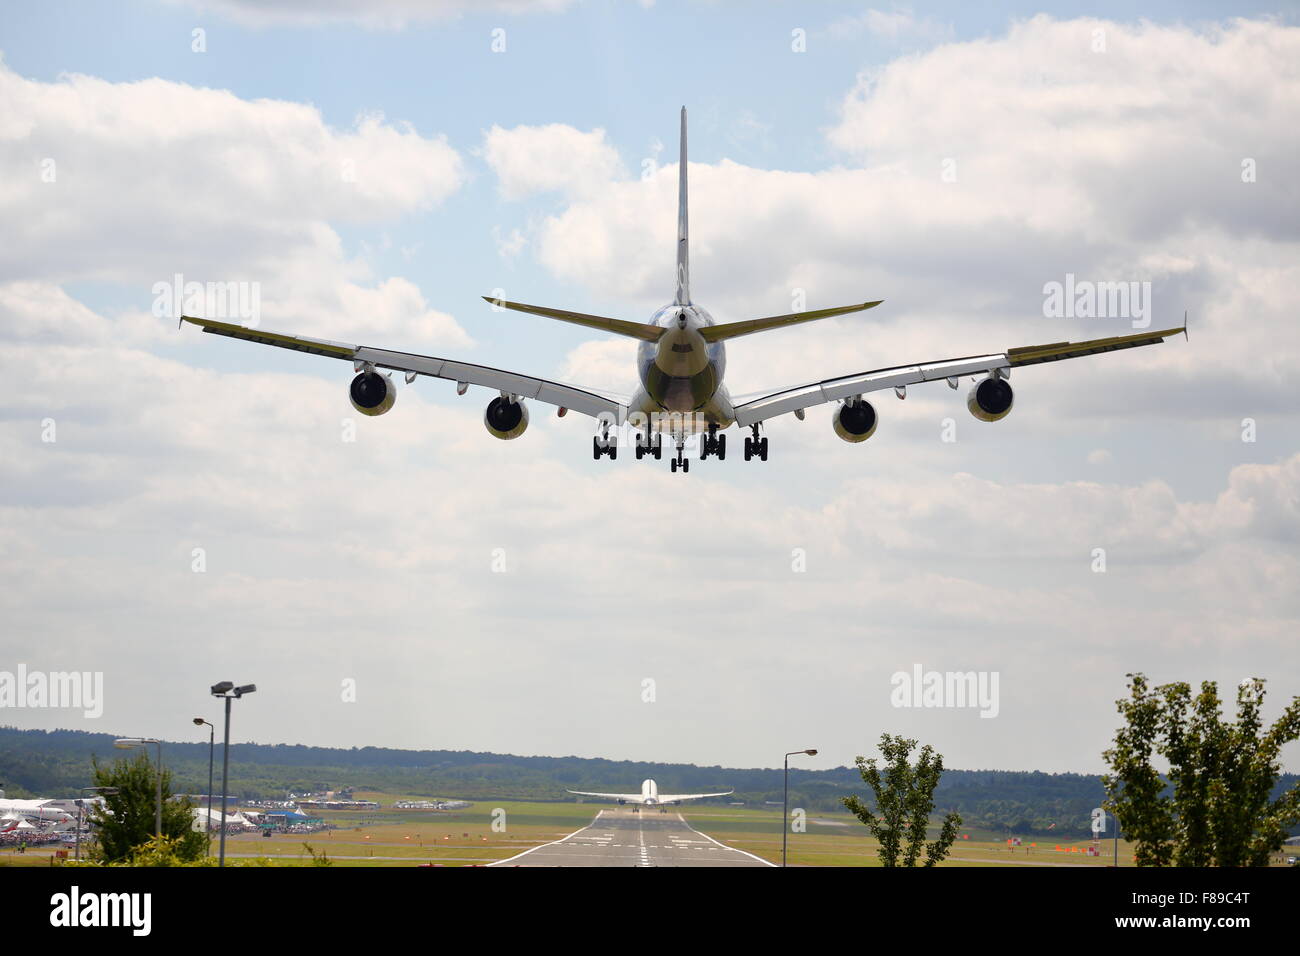 Un Airbus A380 à l'atterrissage à Farnborough Air Show 2014, alors que l'Airbus A350 décolle Banque D'Images